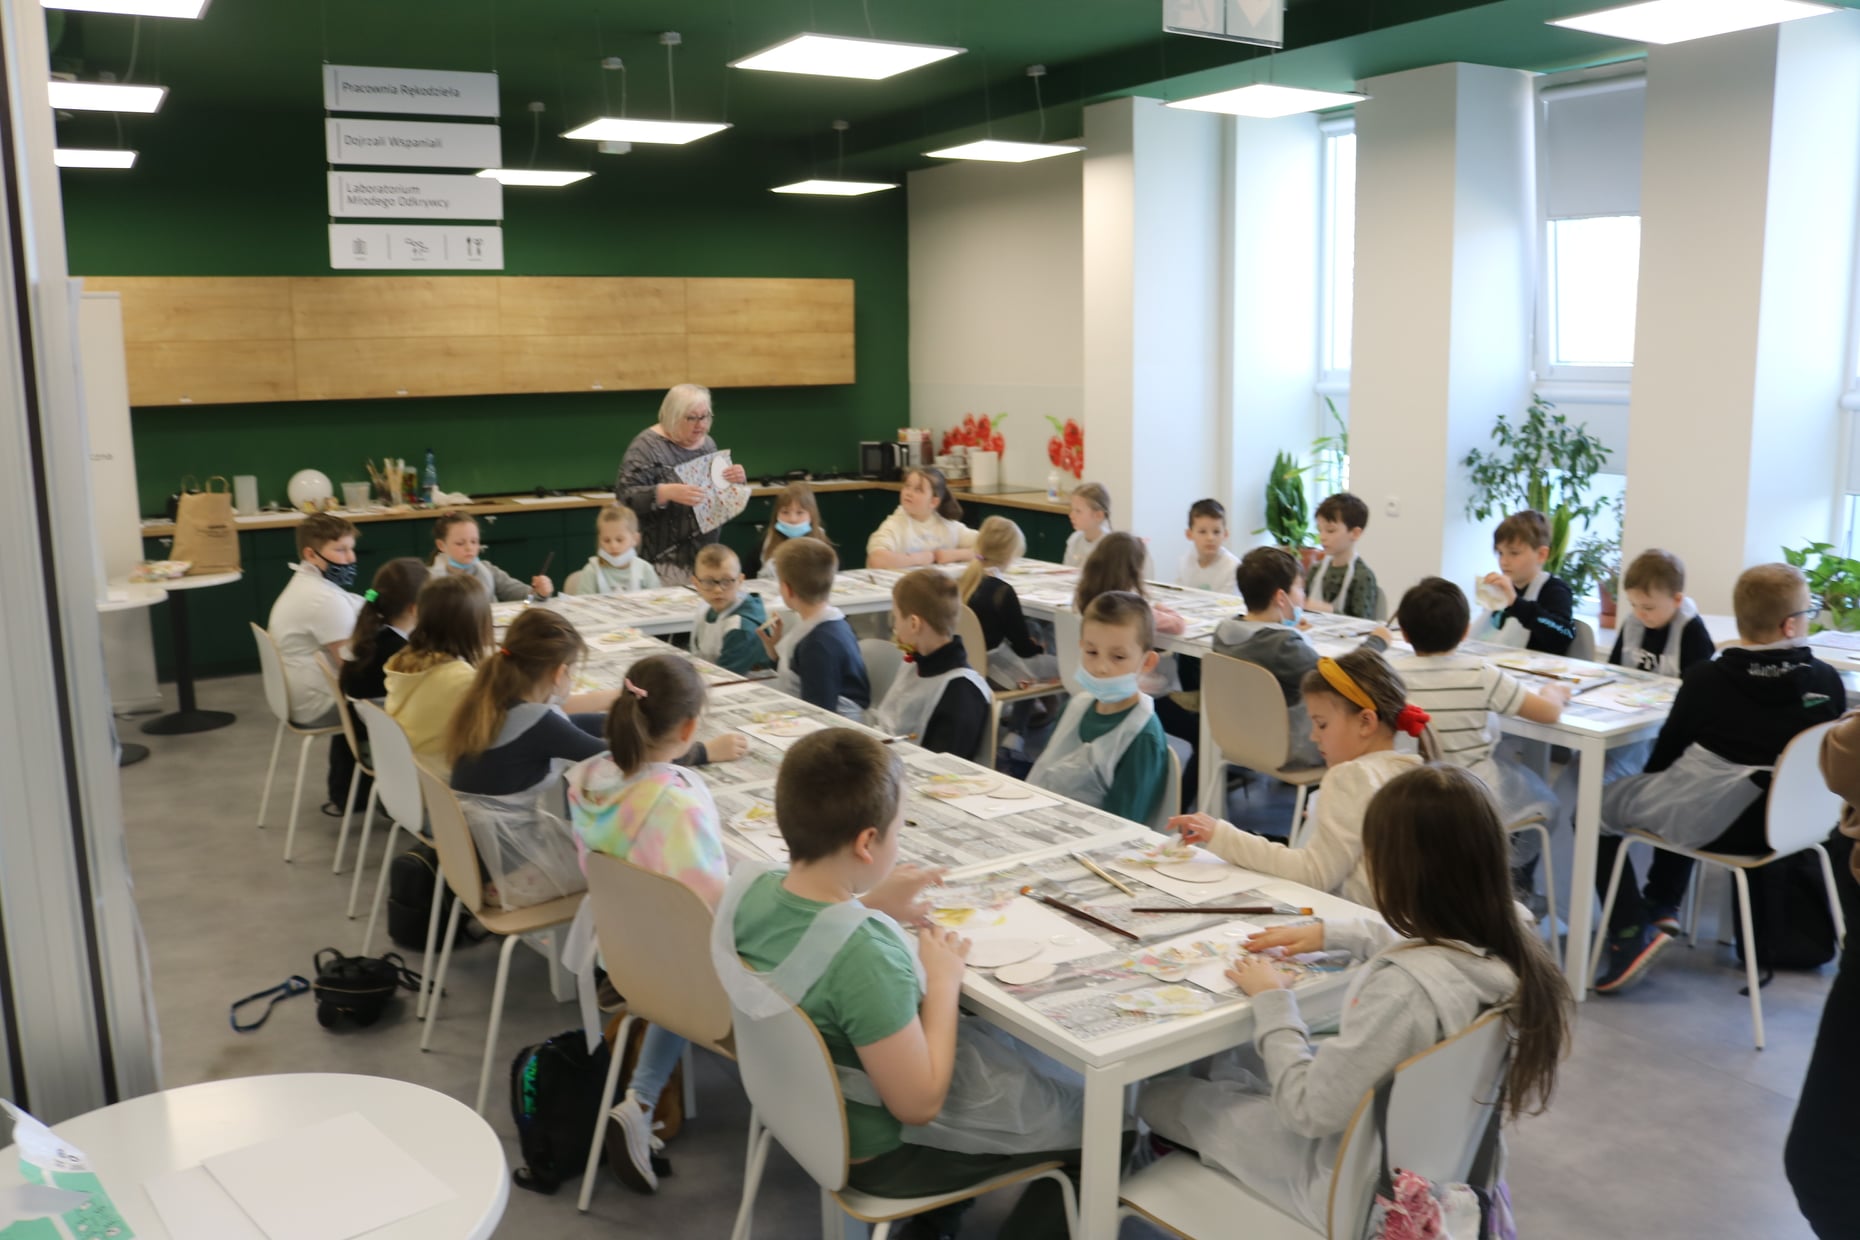 Dzieci siedzące przy stole i wykonujące prace ręczne podczas lekcji bibliotecznej w pracowni rękodzieła